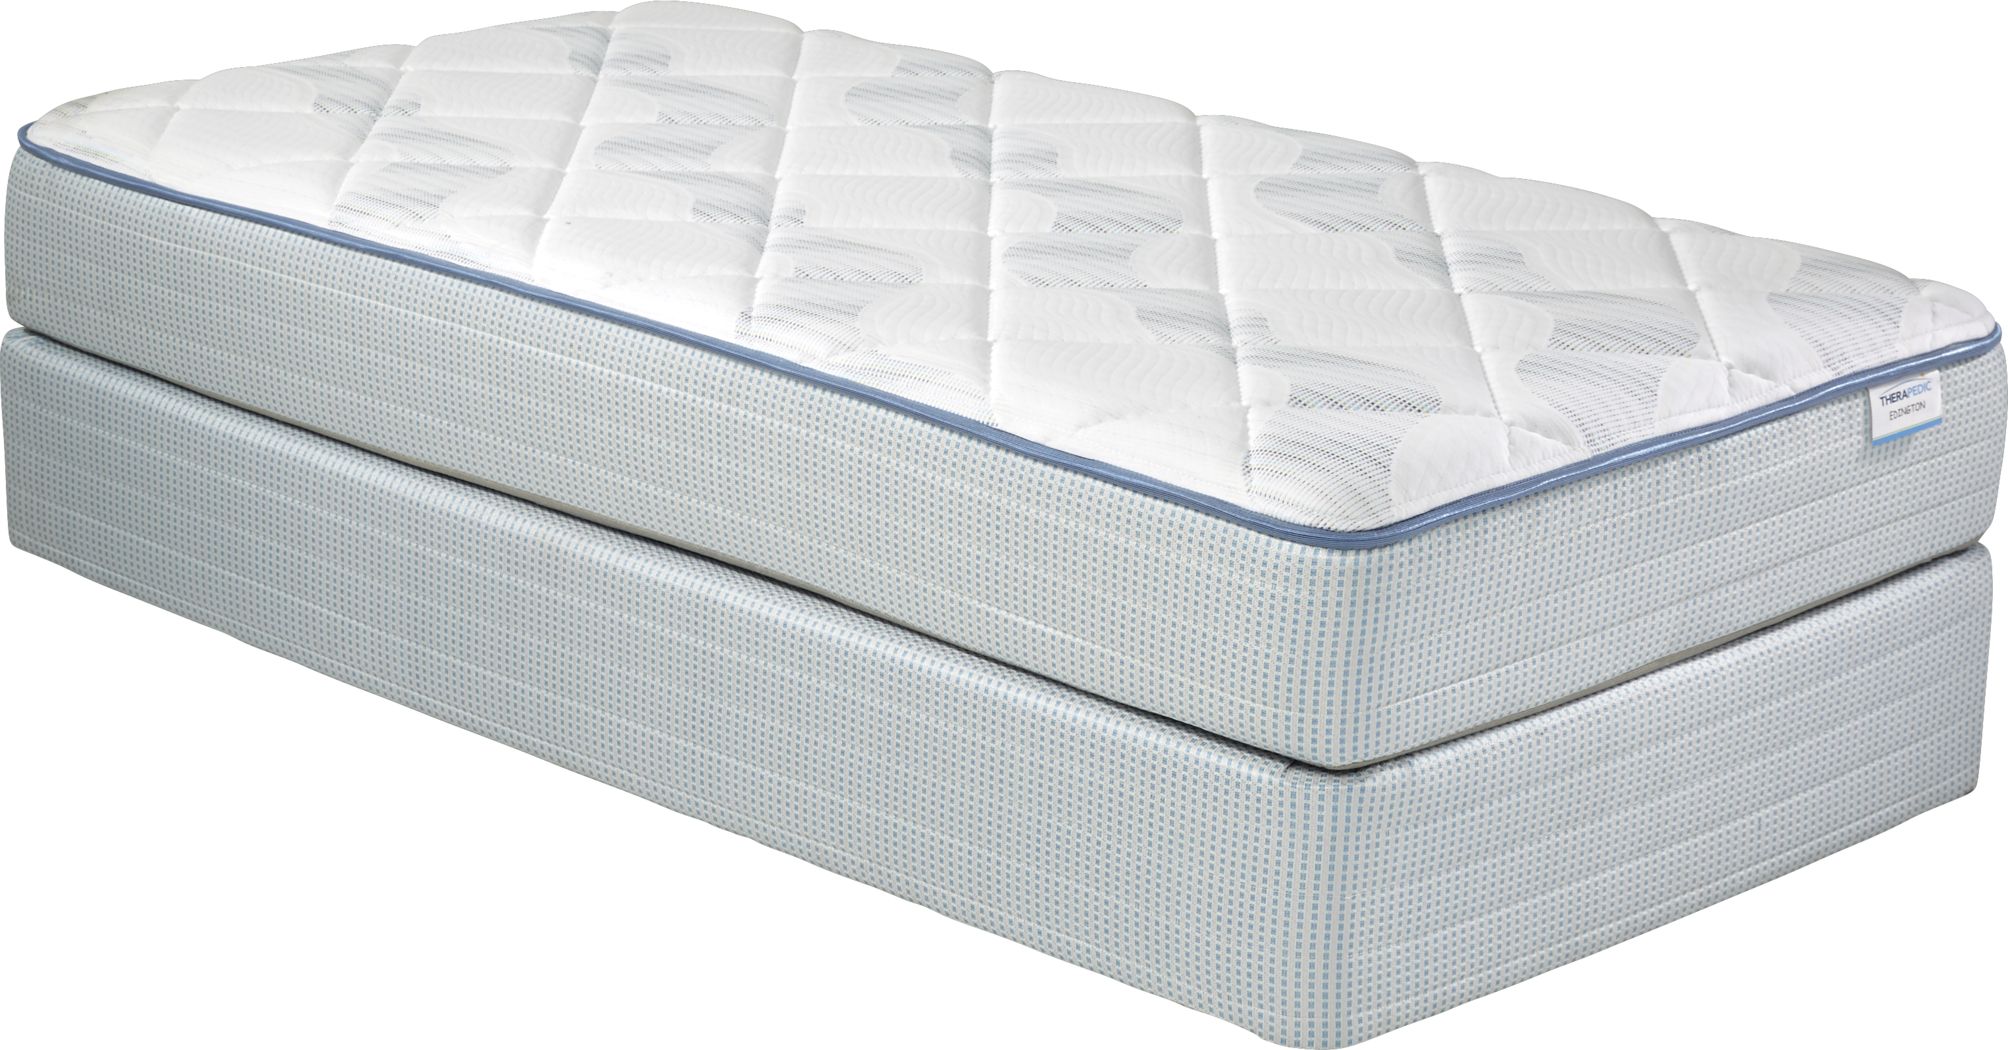 therapedic twin size mattress set